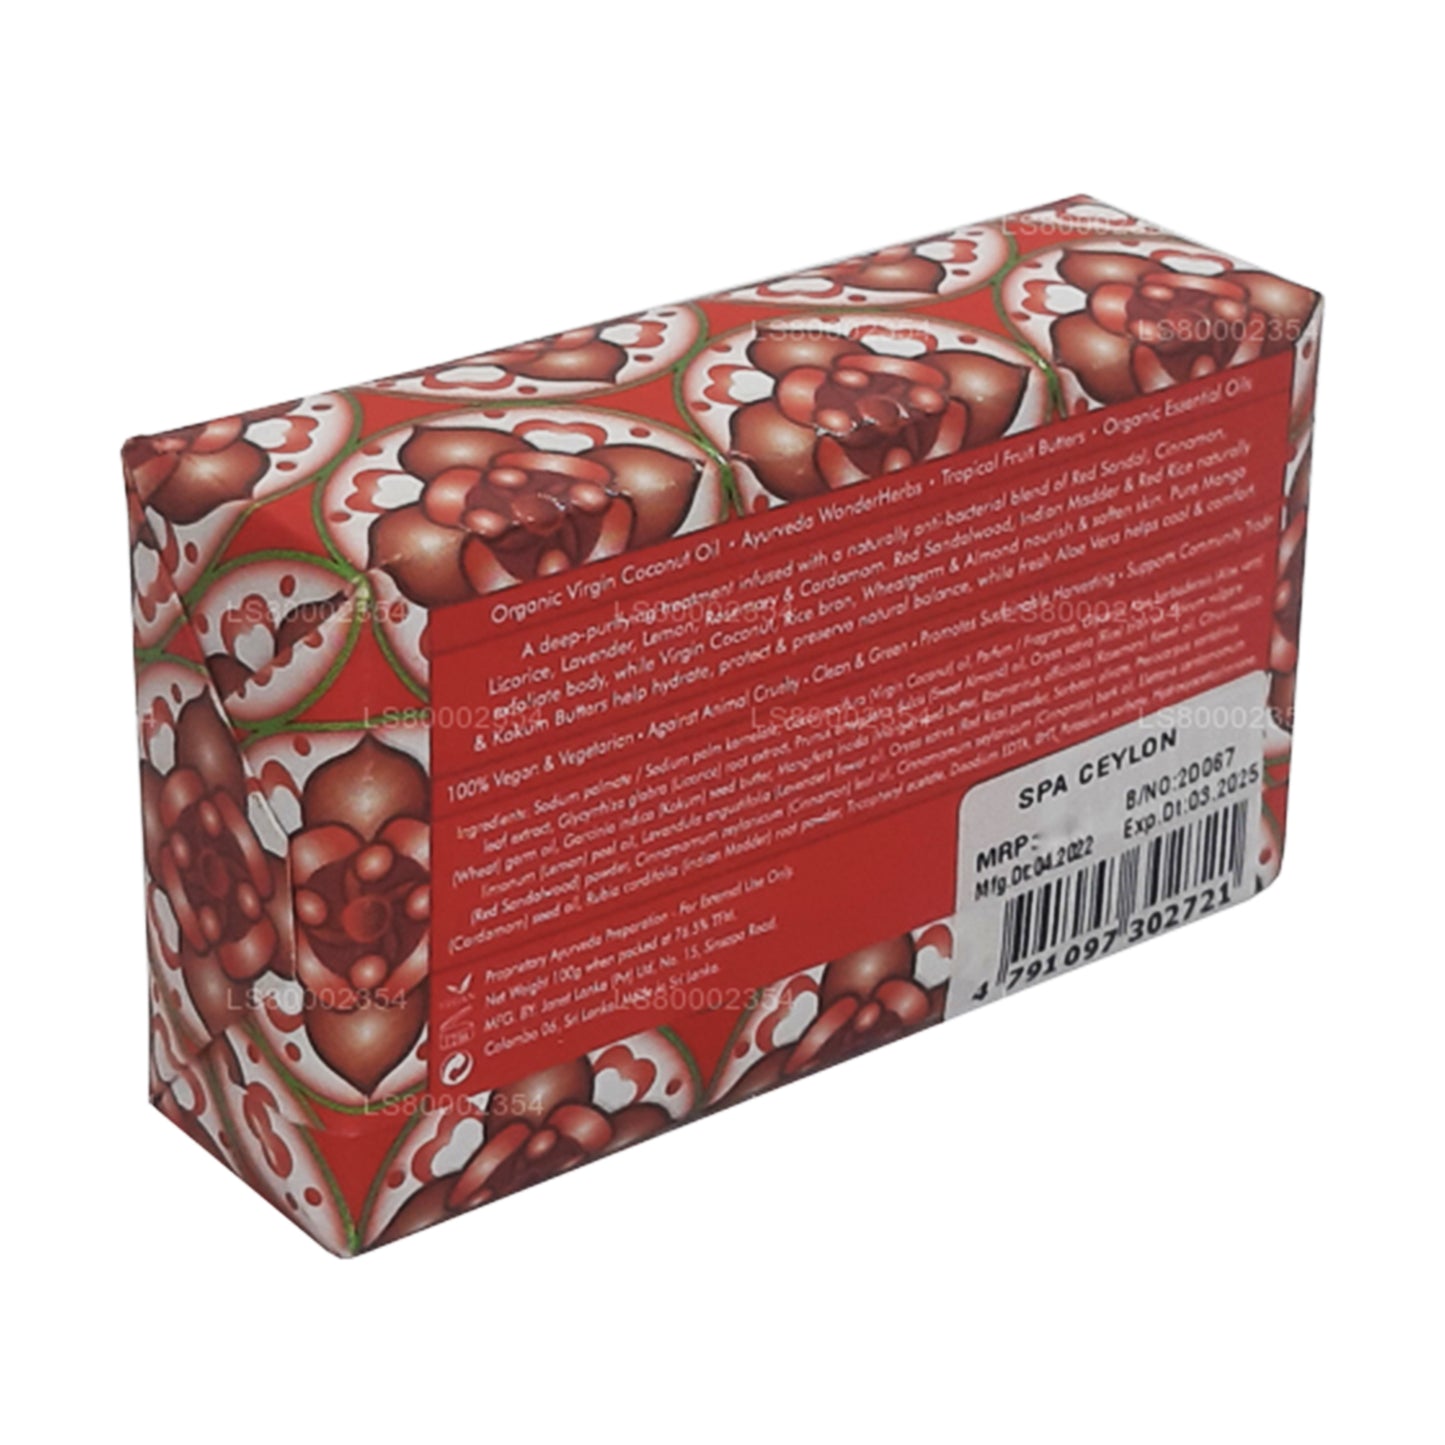 Антибактериальное отшелушивающее оздоровительное мыло Spa Ceylon Red Sandal и корицы (100 г)